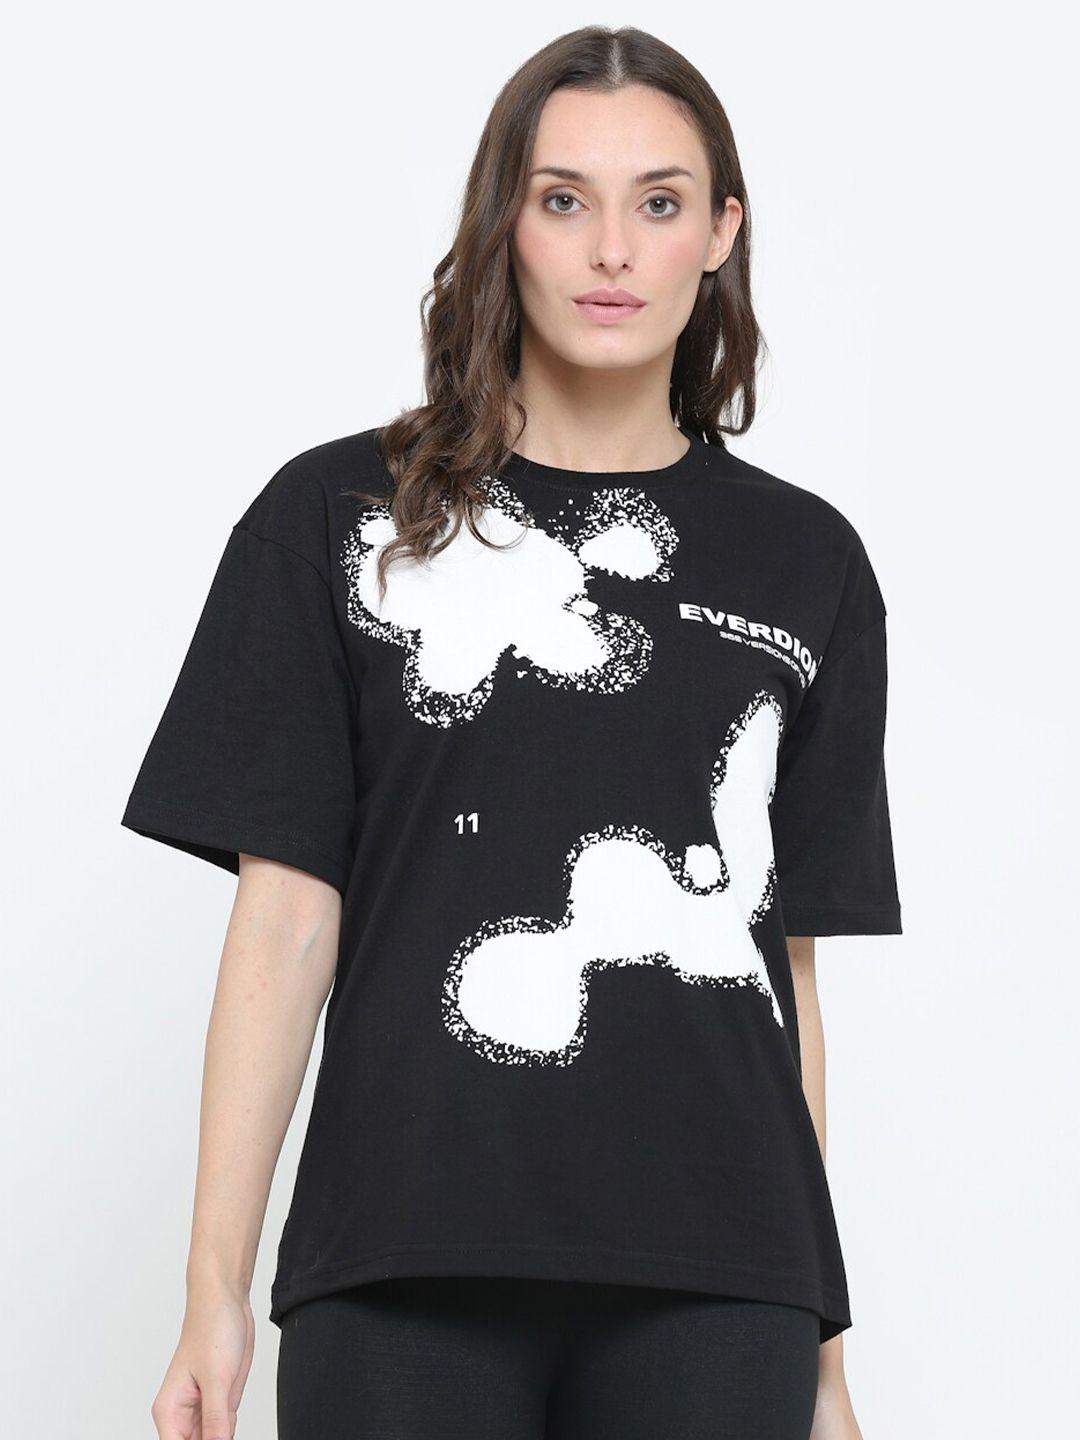 everdion women black & white printed drop-shoulder sleeves bio finish loose t-shirt